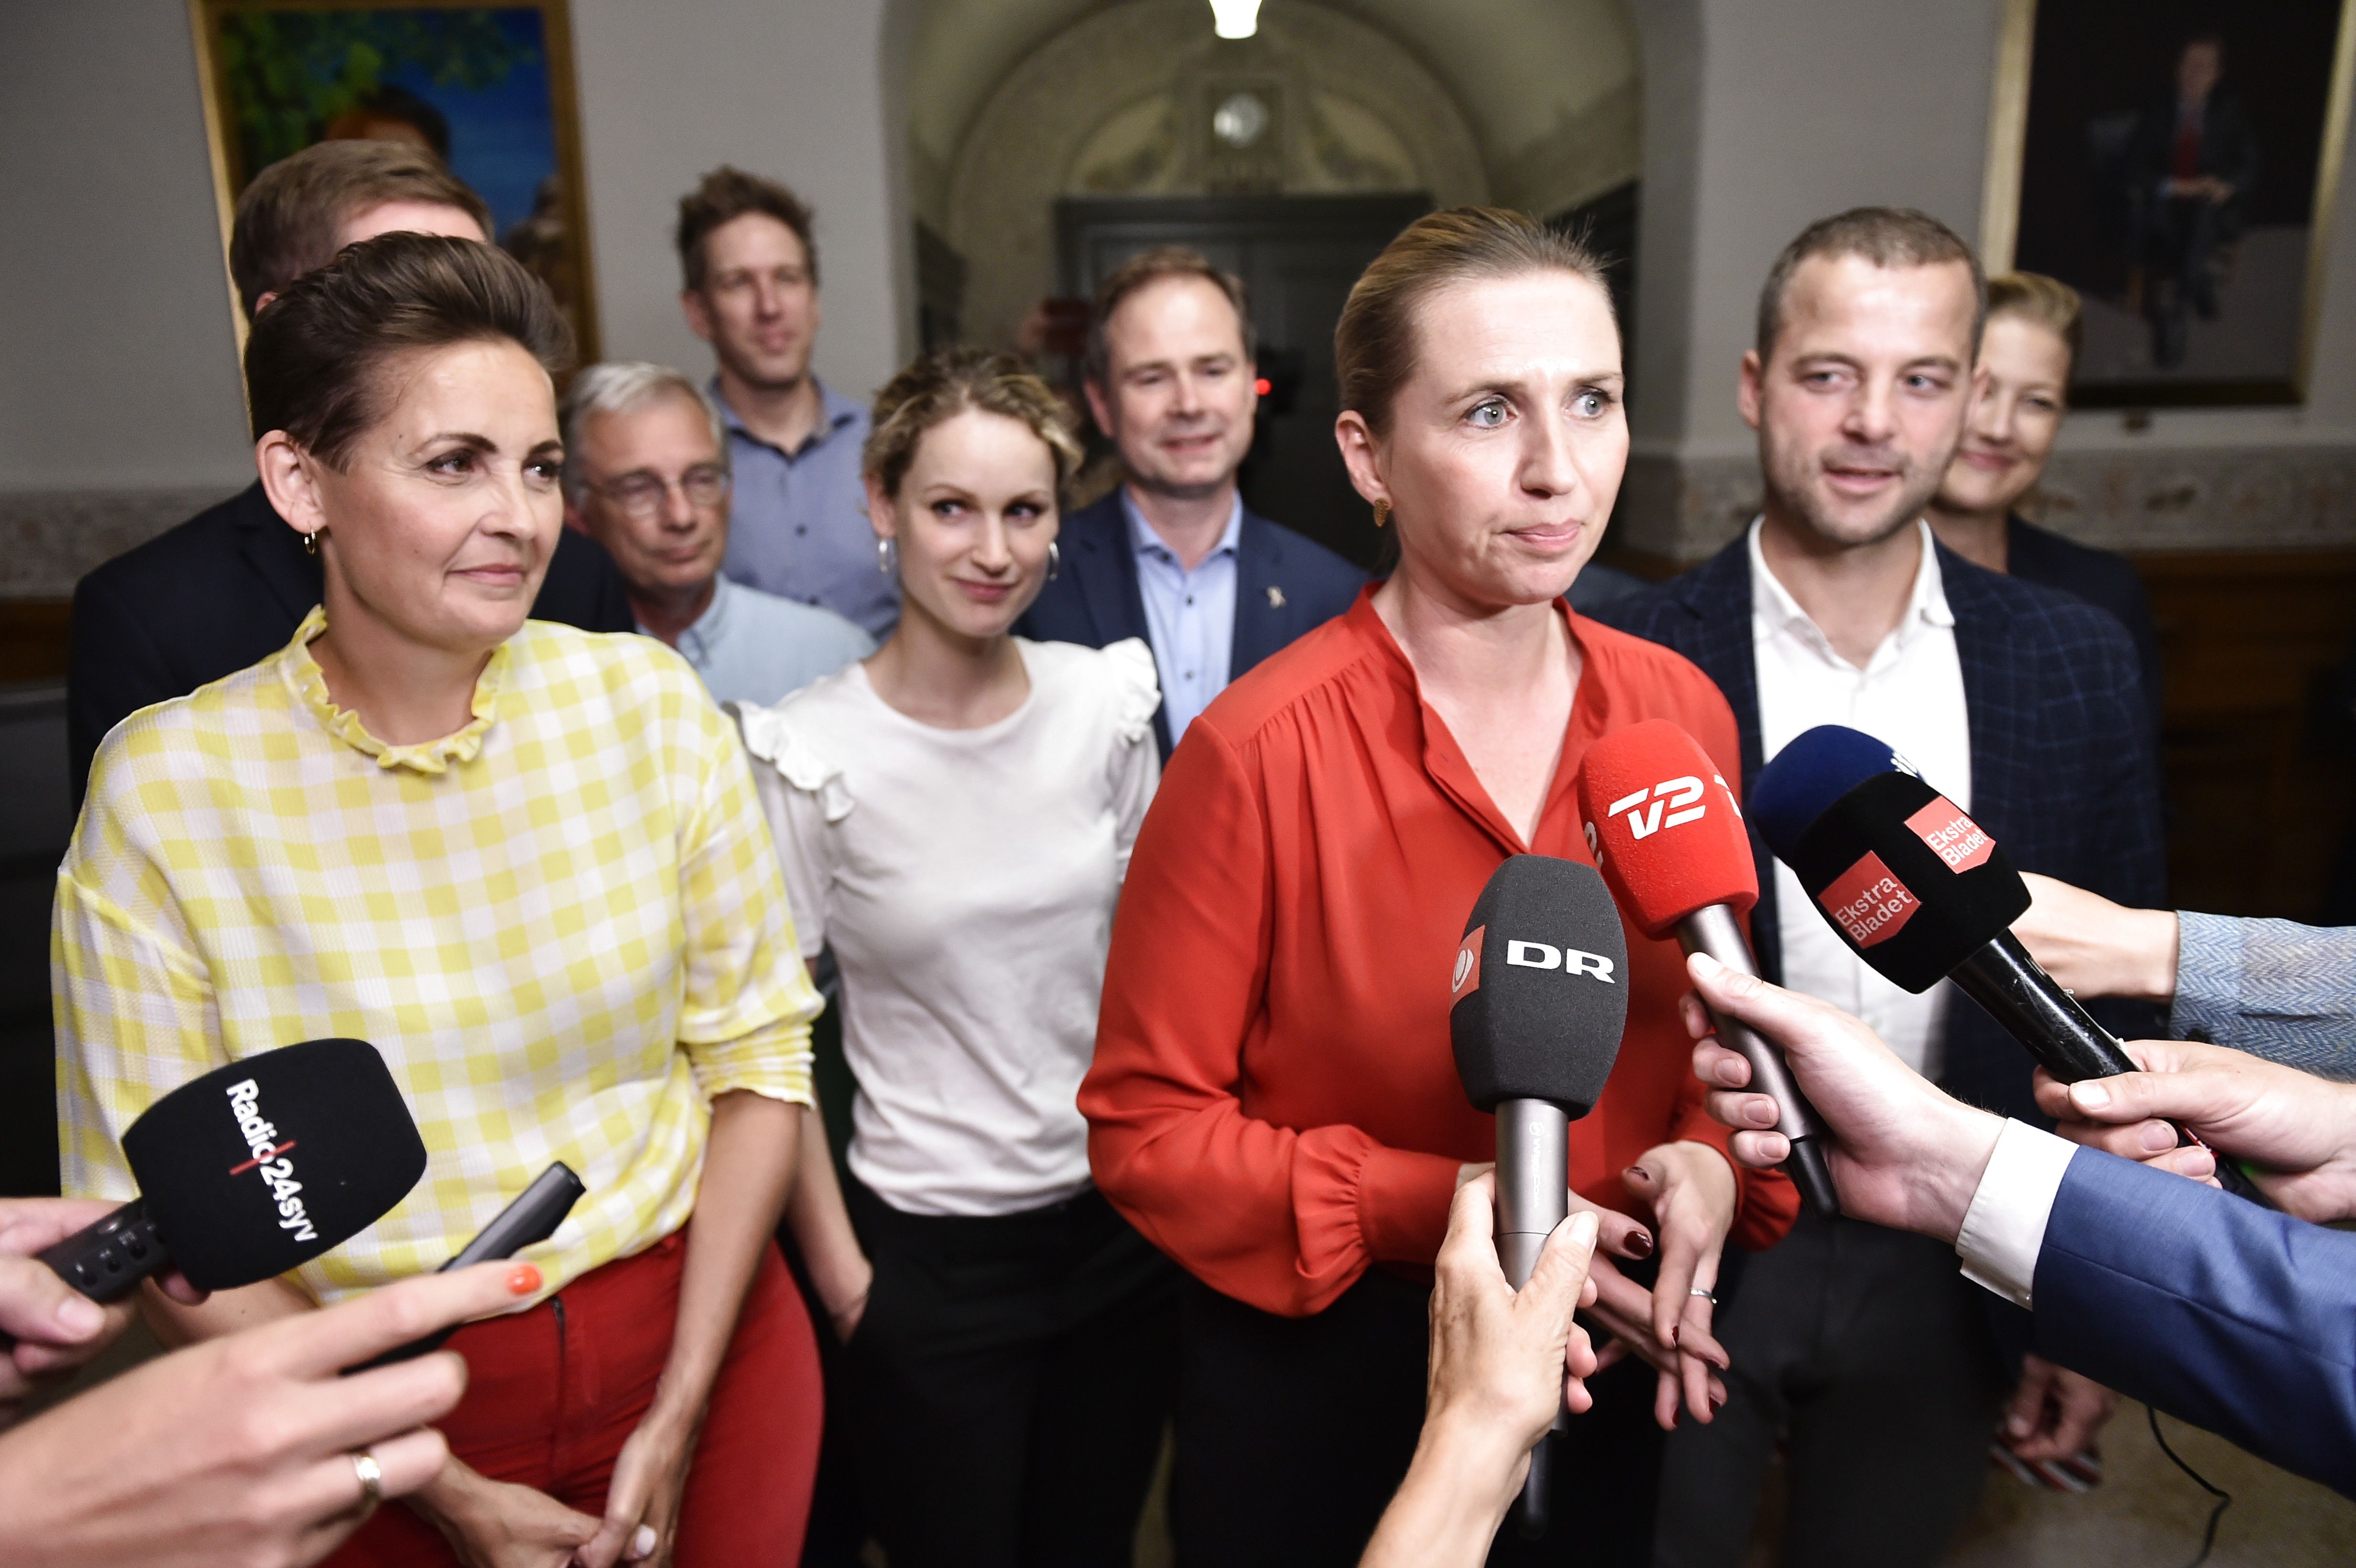 Mette Frederiksen Denmark's youngest-ever prime minister | CNN